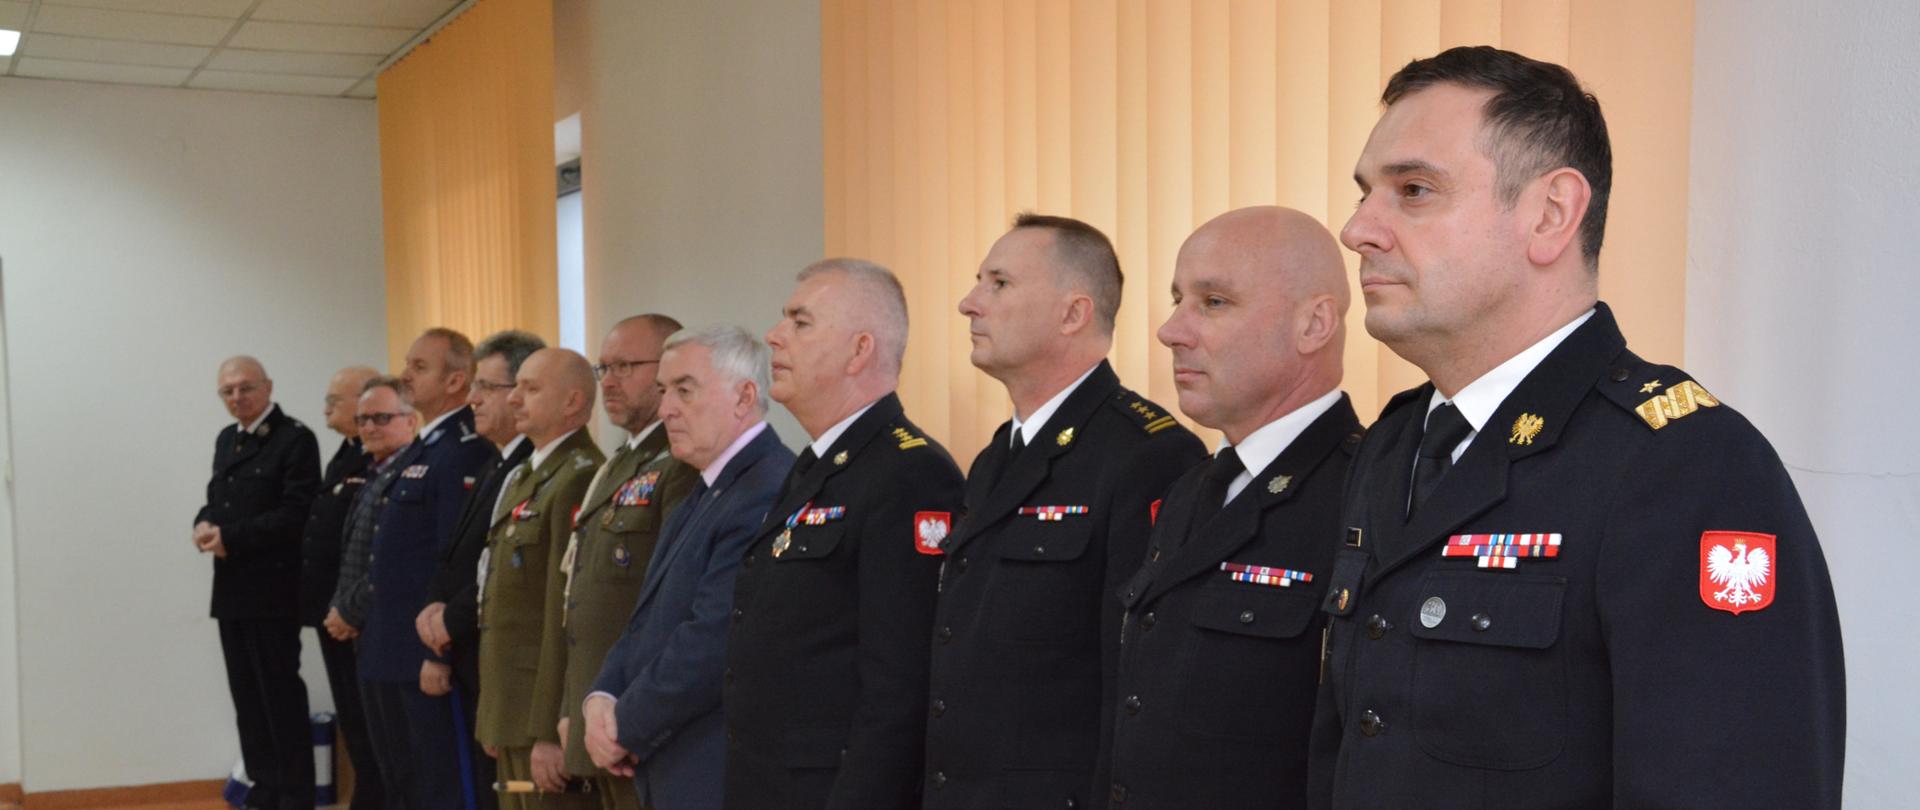 Na zdjęciu widzimy mężczyzn - przedstawicieli różnych służb mundurowych w umundurowaniu oraz przedstawicieli władz administracyjnych w garniturach.